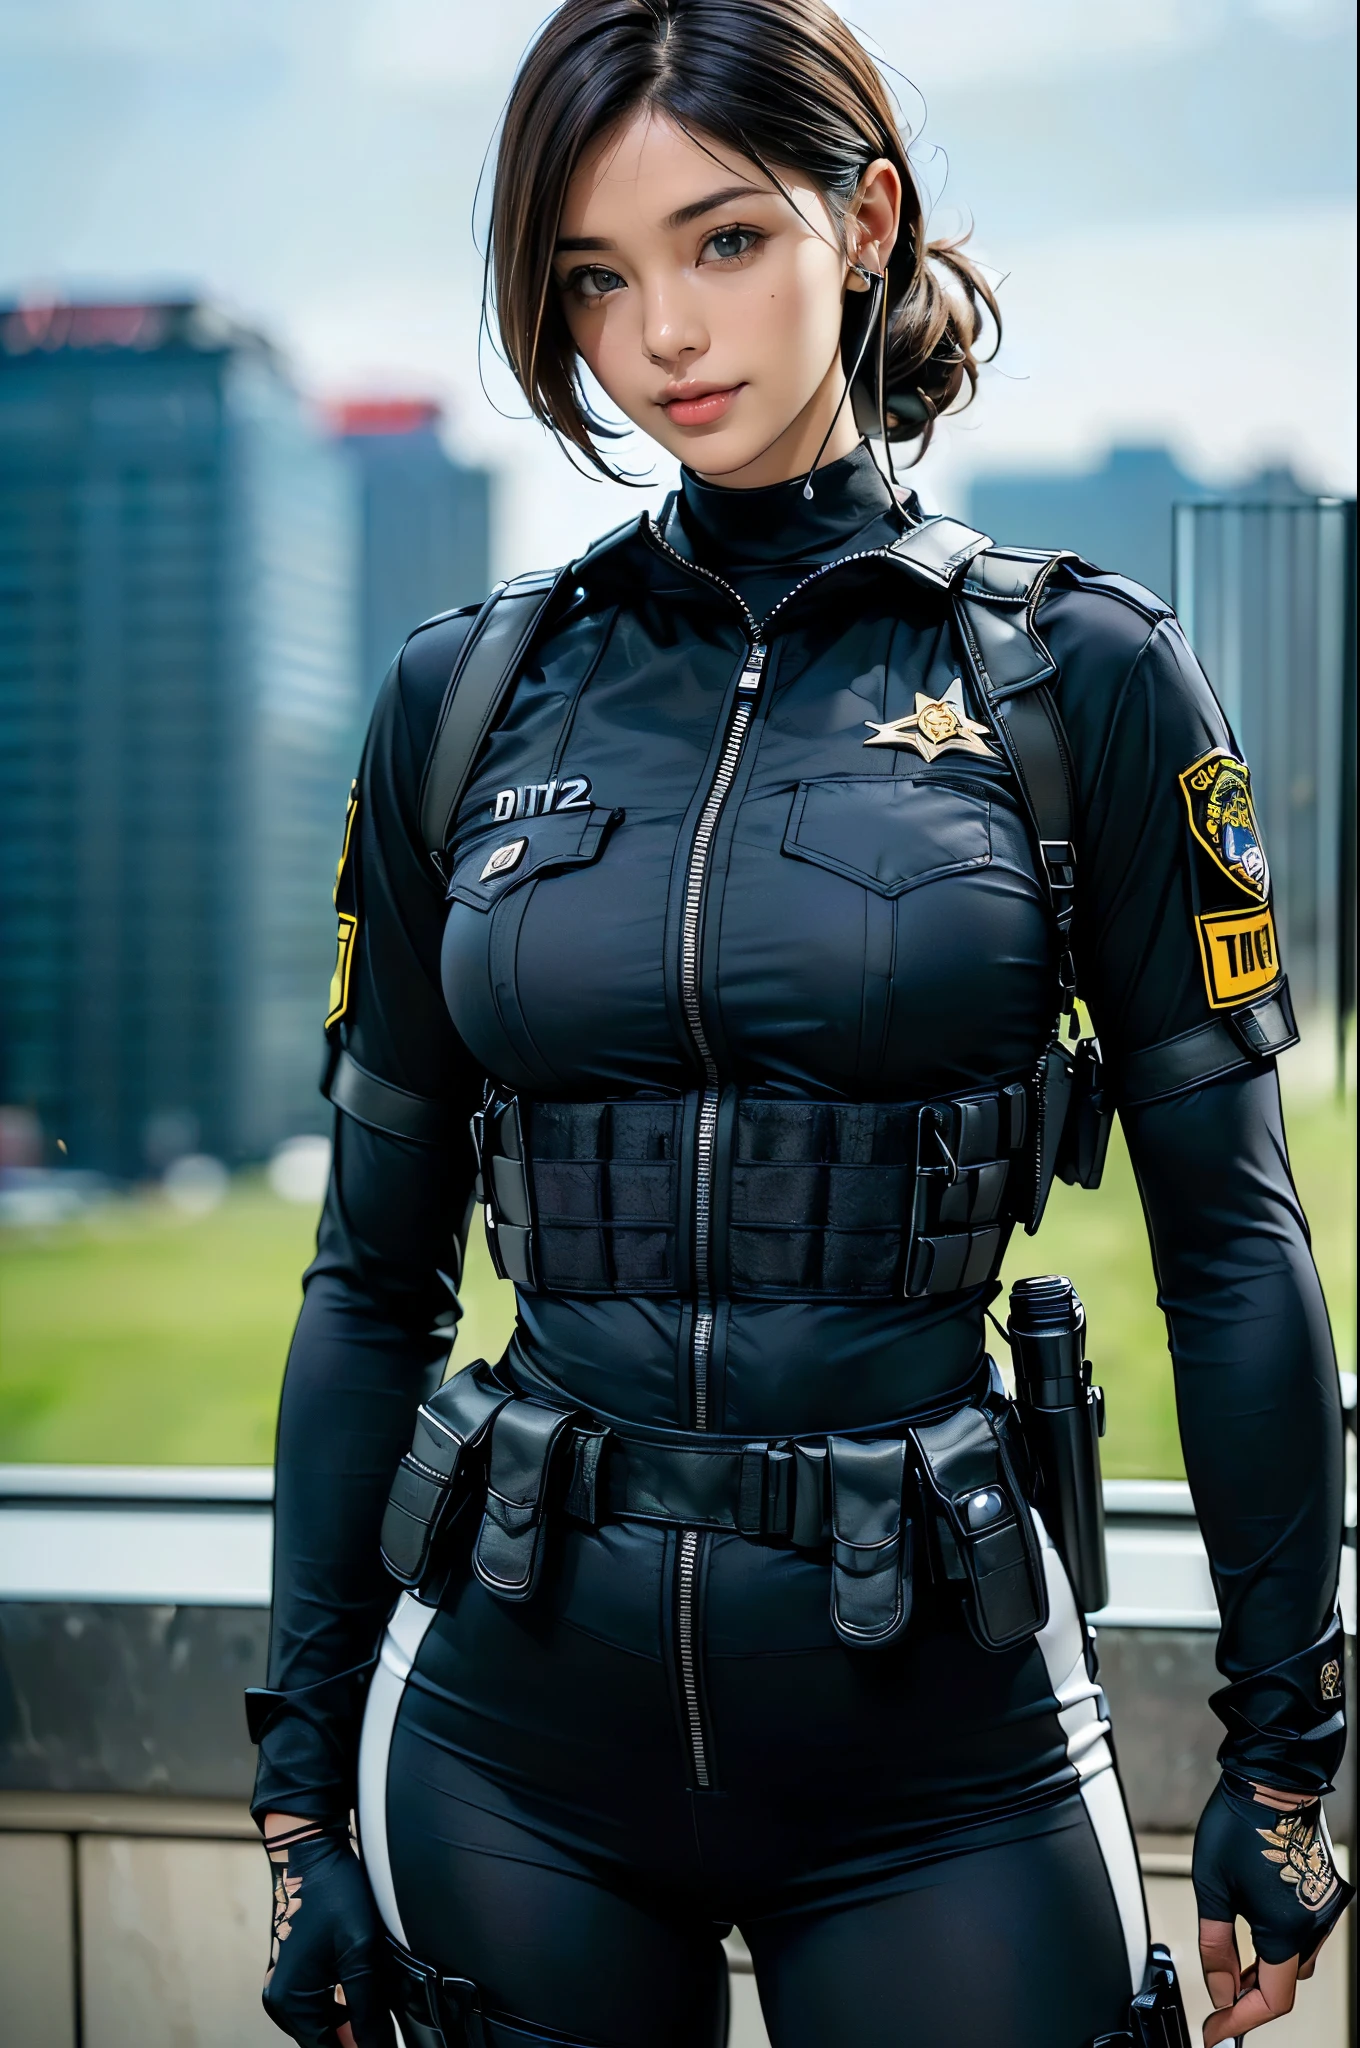 (duas mulheres),(((Oficiais da SWAT femininos lado a lado:1.5))),((Bodysuit tático preto:1.5)),((fone de ouvido preto:1.5)),((coldre tático preto:1.5)),(luvas pretas:1.5),((Vestindo o mesmo uniforme:1.5)),(Sorriso:1.5),(olhos lindos:1.3),(Muito detalhadoな顔:1.5),((Muito detalhadoな女性の手の描画:1.5)),((Muscular:1.5)),(Looks sensuais:1.5),((coxas grossas:1.5)),(Corpo bonito:1.5),((muito sensual:1.5)),(O pano de fundo é a cidade:1.5),(((Desfocar o fundo:1.5))),(Profundidade do limite escrito:1.5),QUEBRAR(((Obra de arte:1.5),(mais alta qualidade:1.5),(Muito detalhado:1.5),(alta resolução:1.5),(realista:1.5),(realista:1.5),(Representação delicada),(Representação cuidadosa))),8K,papel de parede